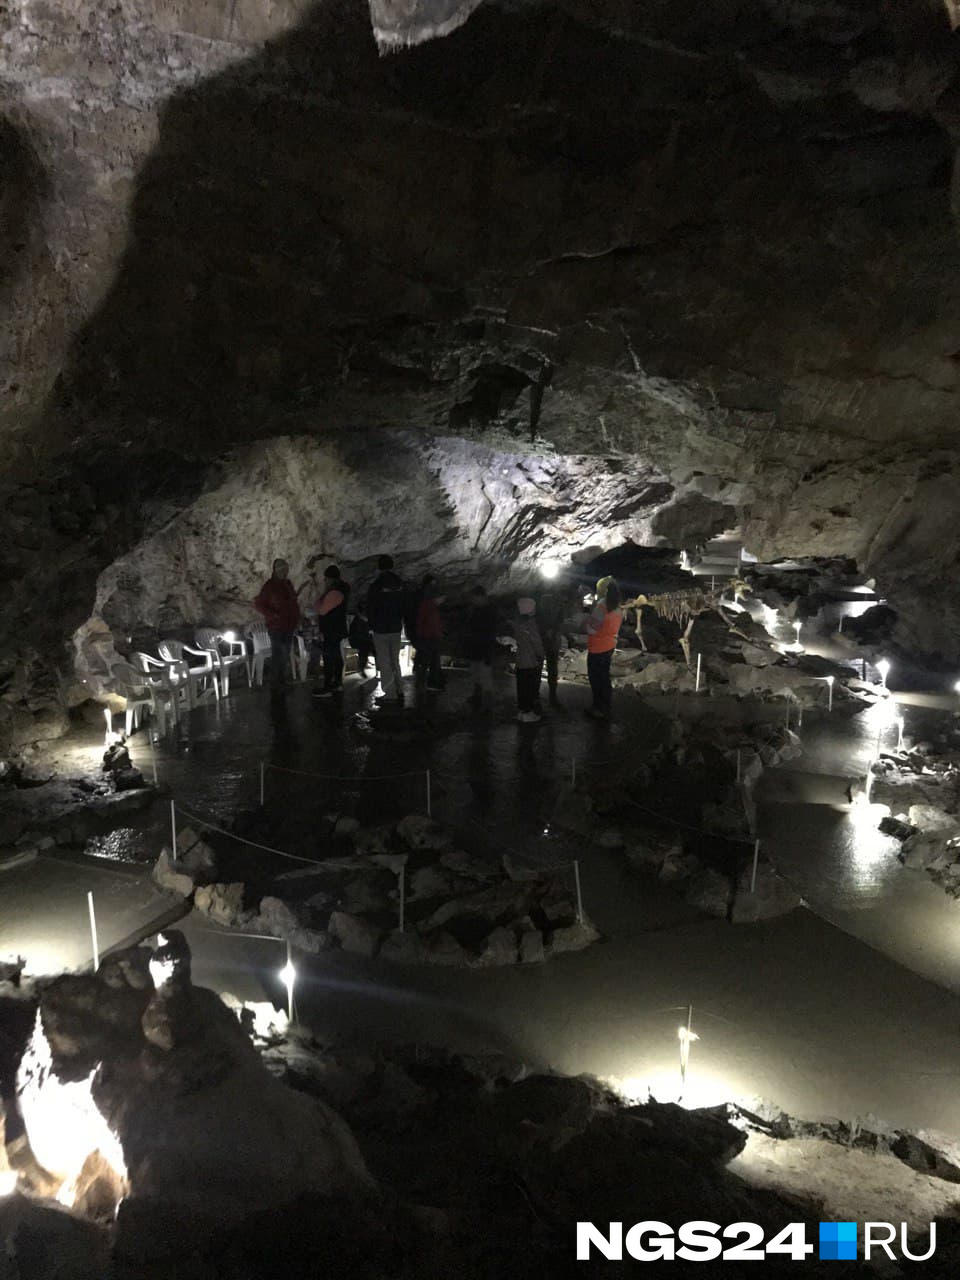 А это уже внутри Караульной пещеры — вход сюда только по билетам и в сопровождении экскурсовода